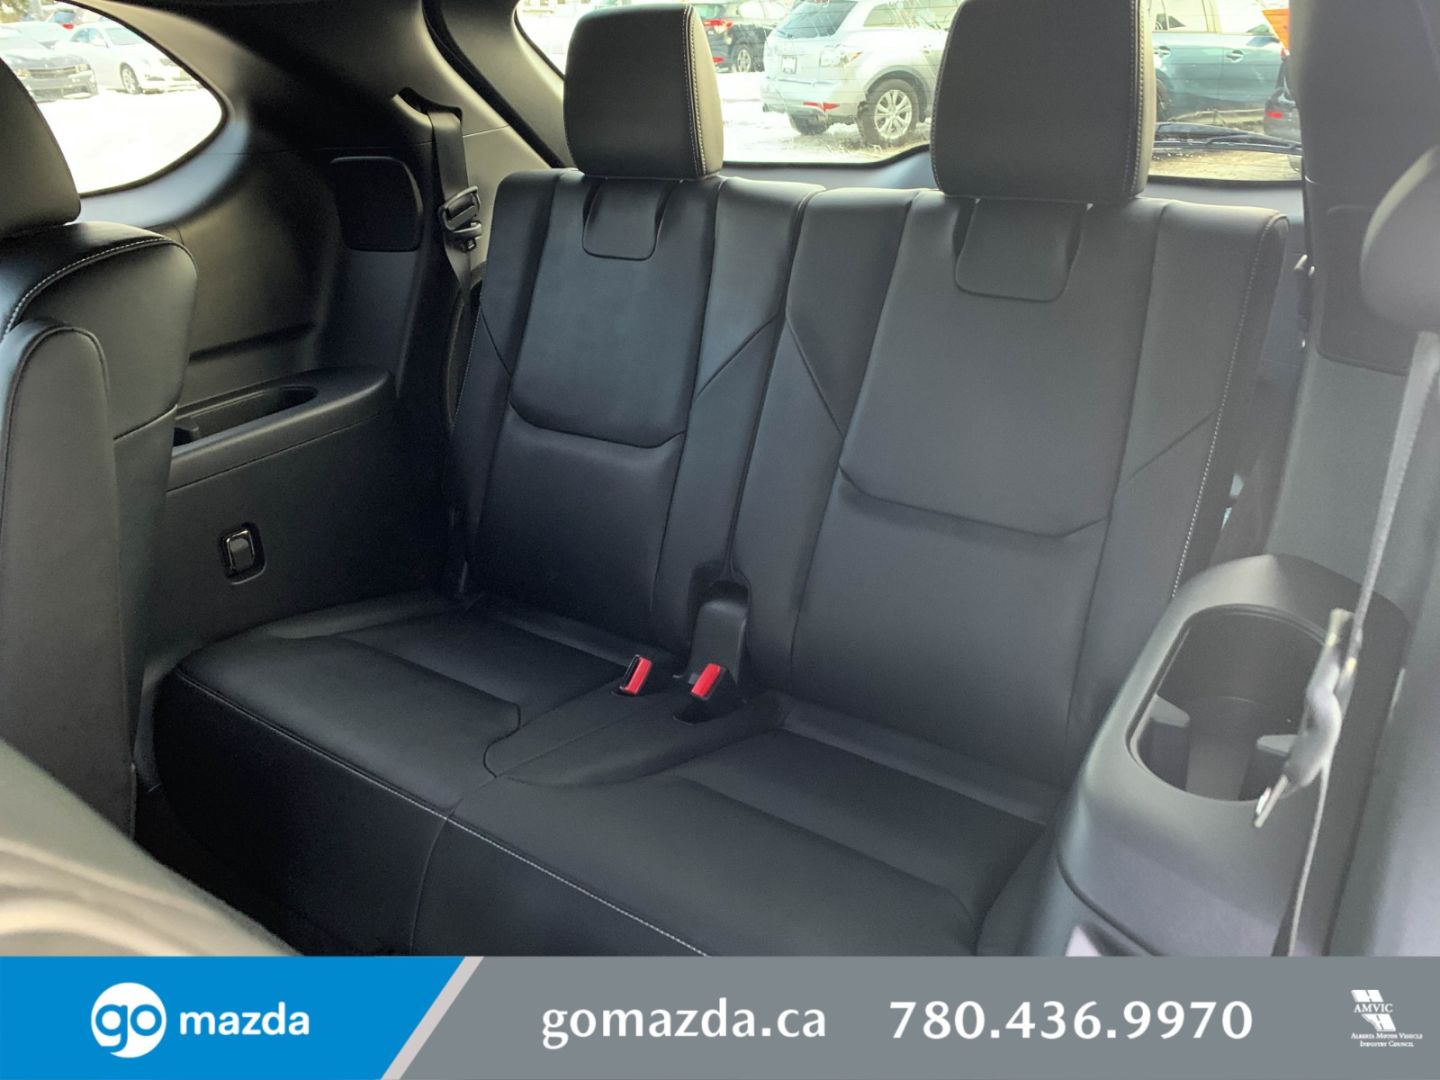 New 21 Mazda Cx 9 Gs L 21c923 Edmonton Alberta Go Auto